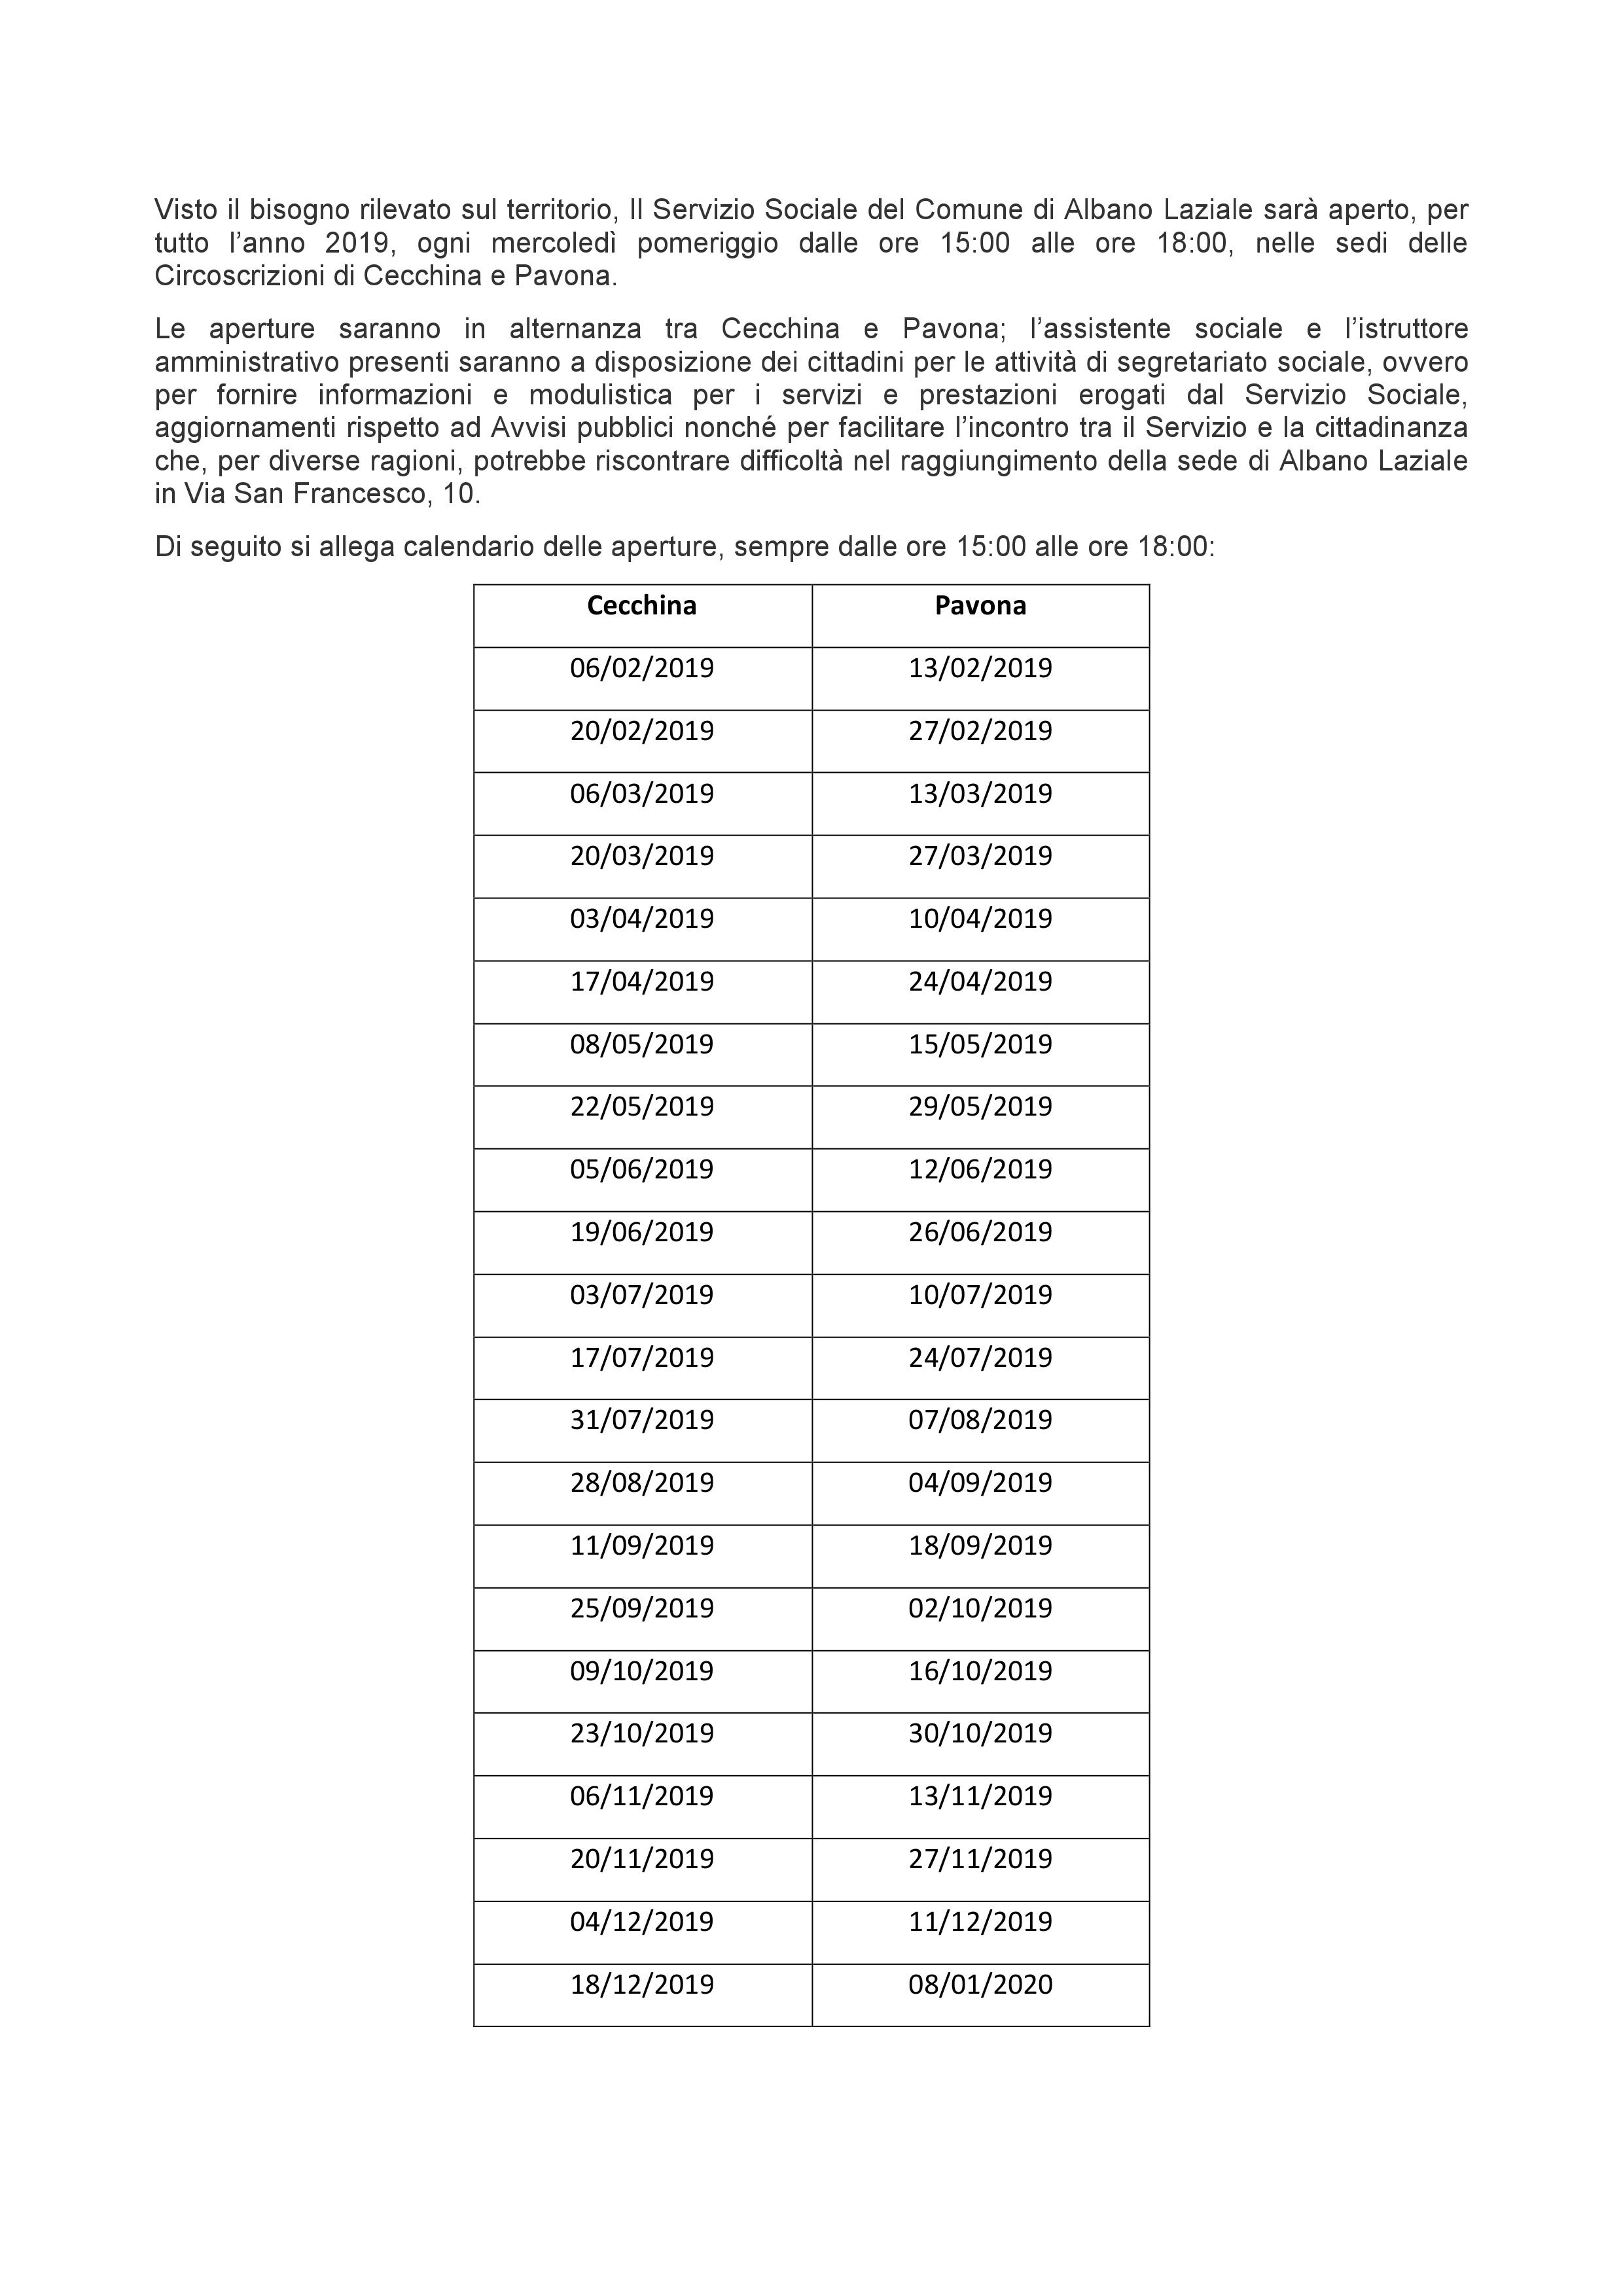 File di immagine contenente date e orari di apertura dei Servizi Sociali nelle Circoscrizioni di Cecchina e Pavona per l'anno 2019